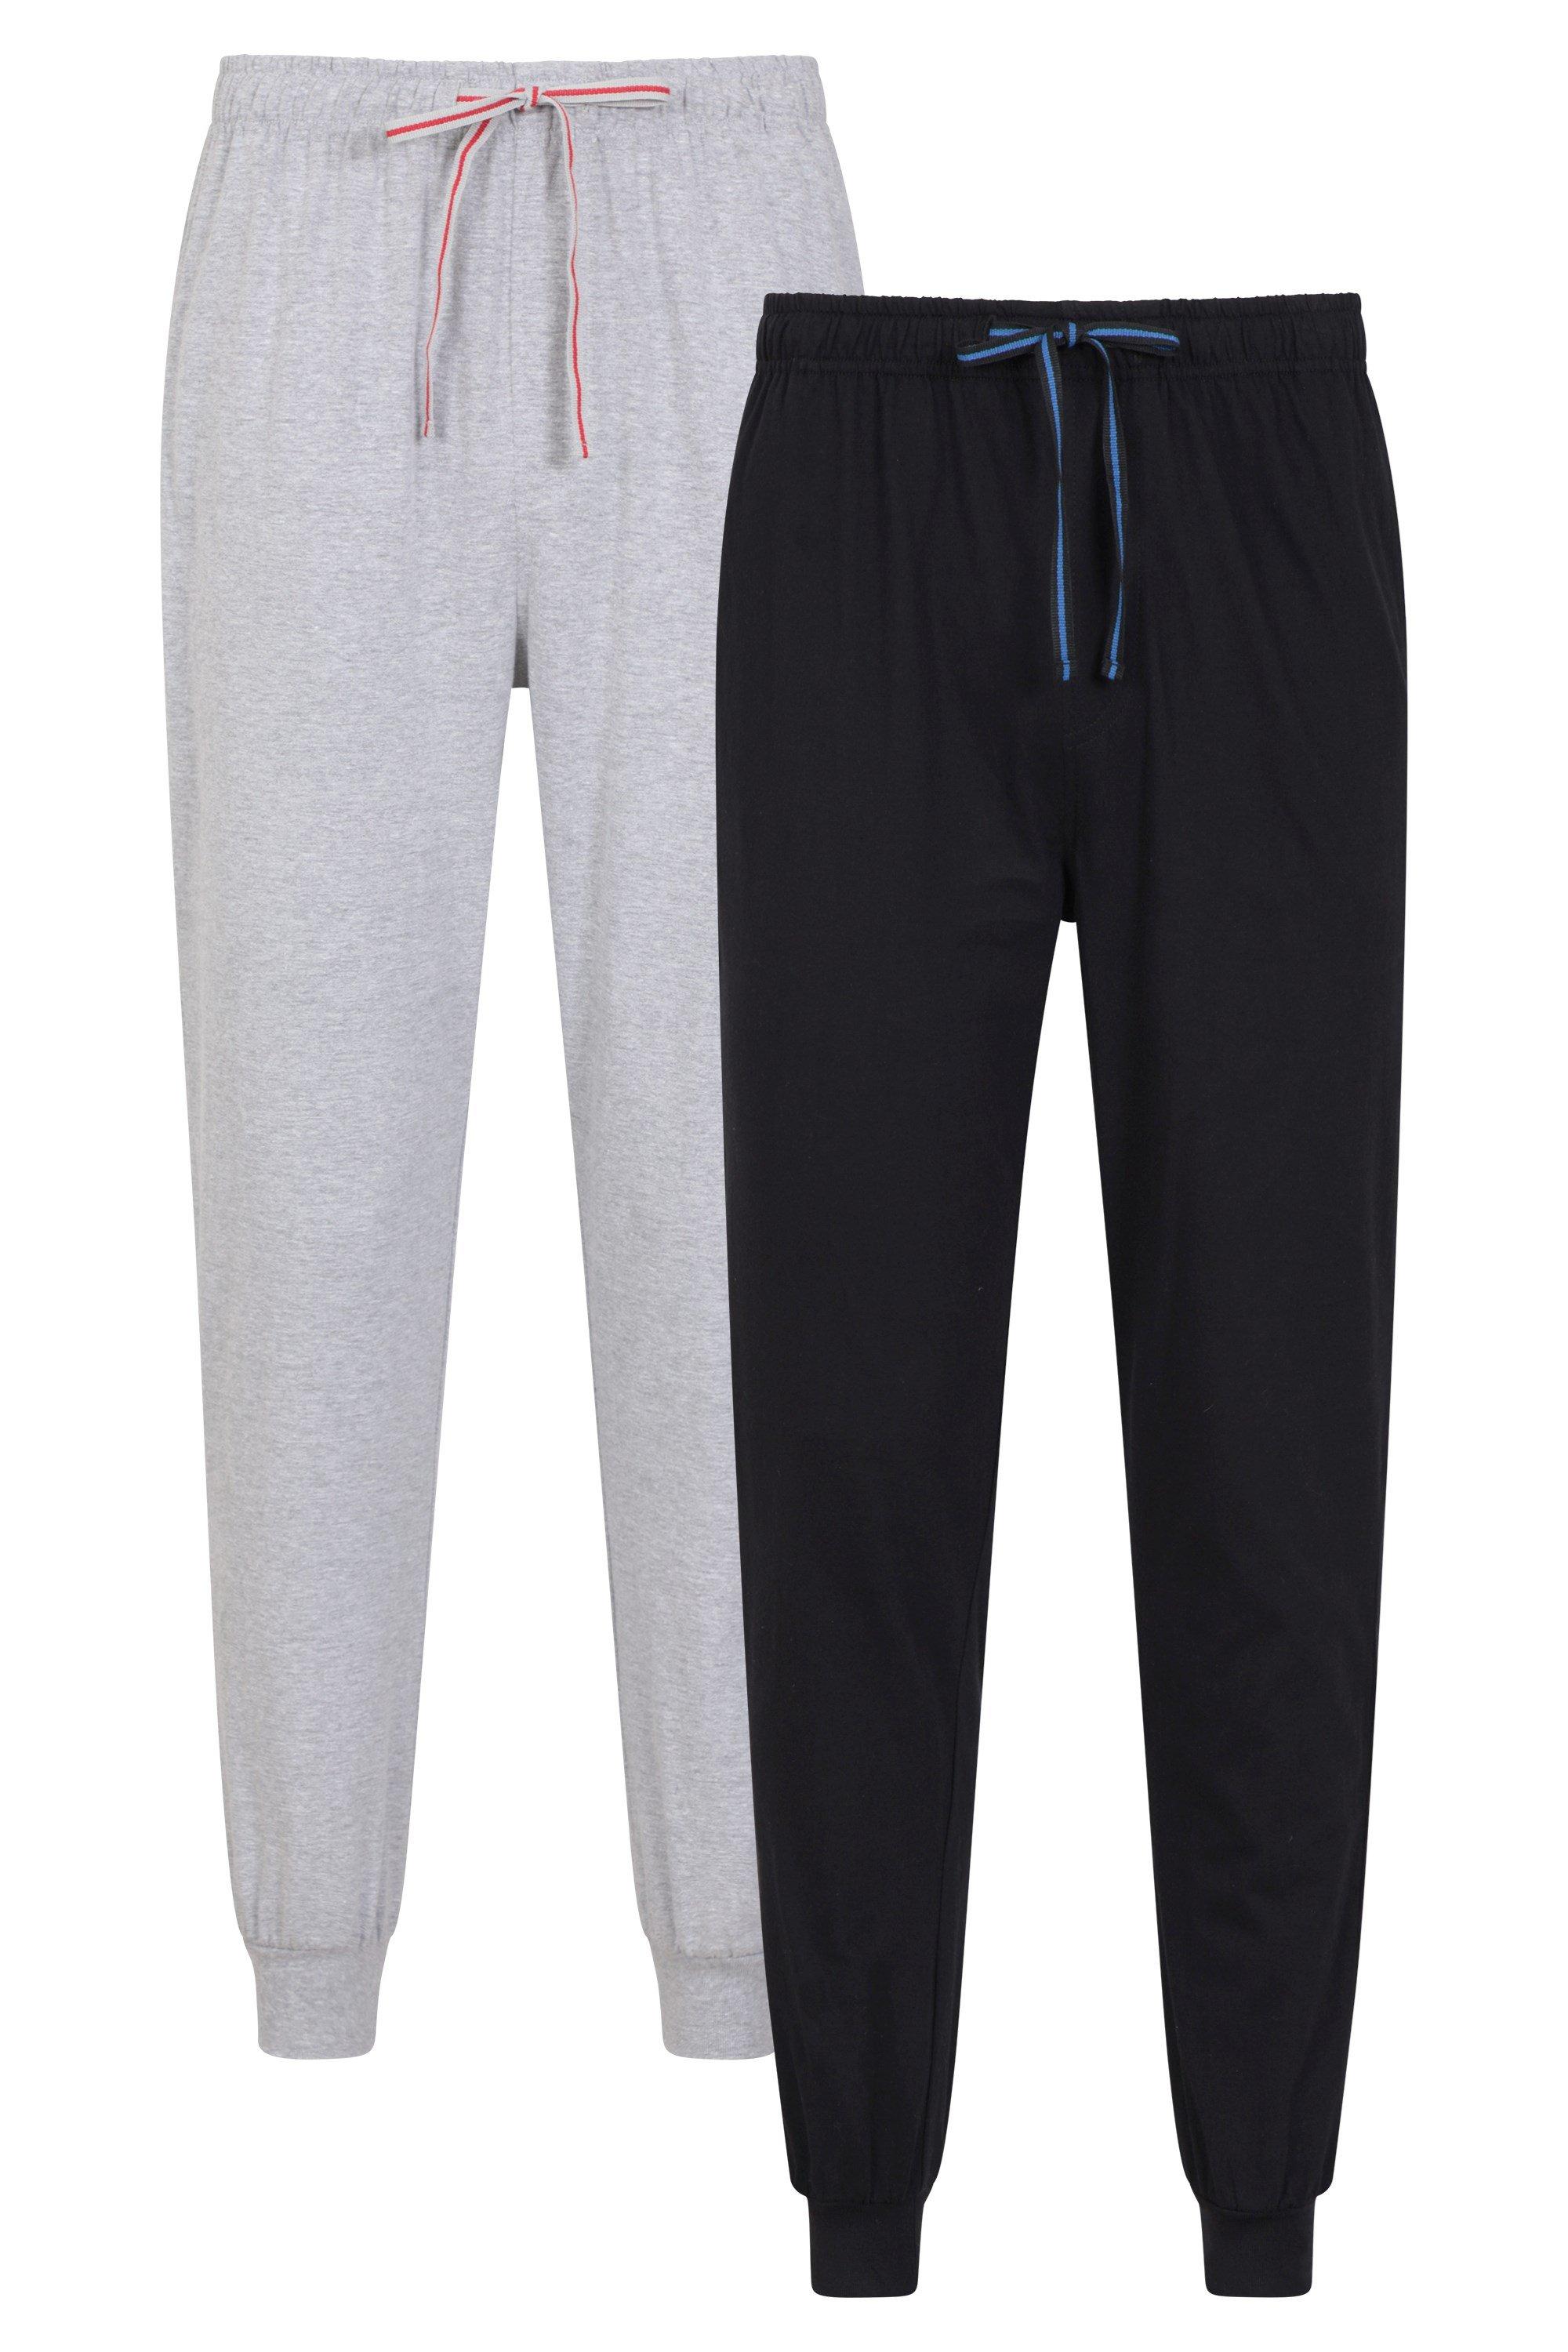 Plain Pyjama Jogger Cotton Comfy Lounging  Pants